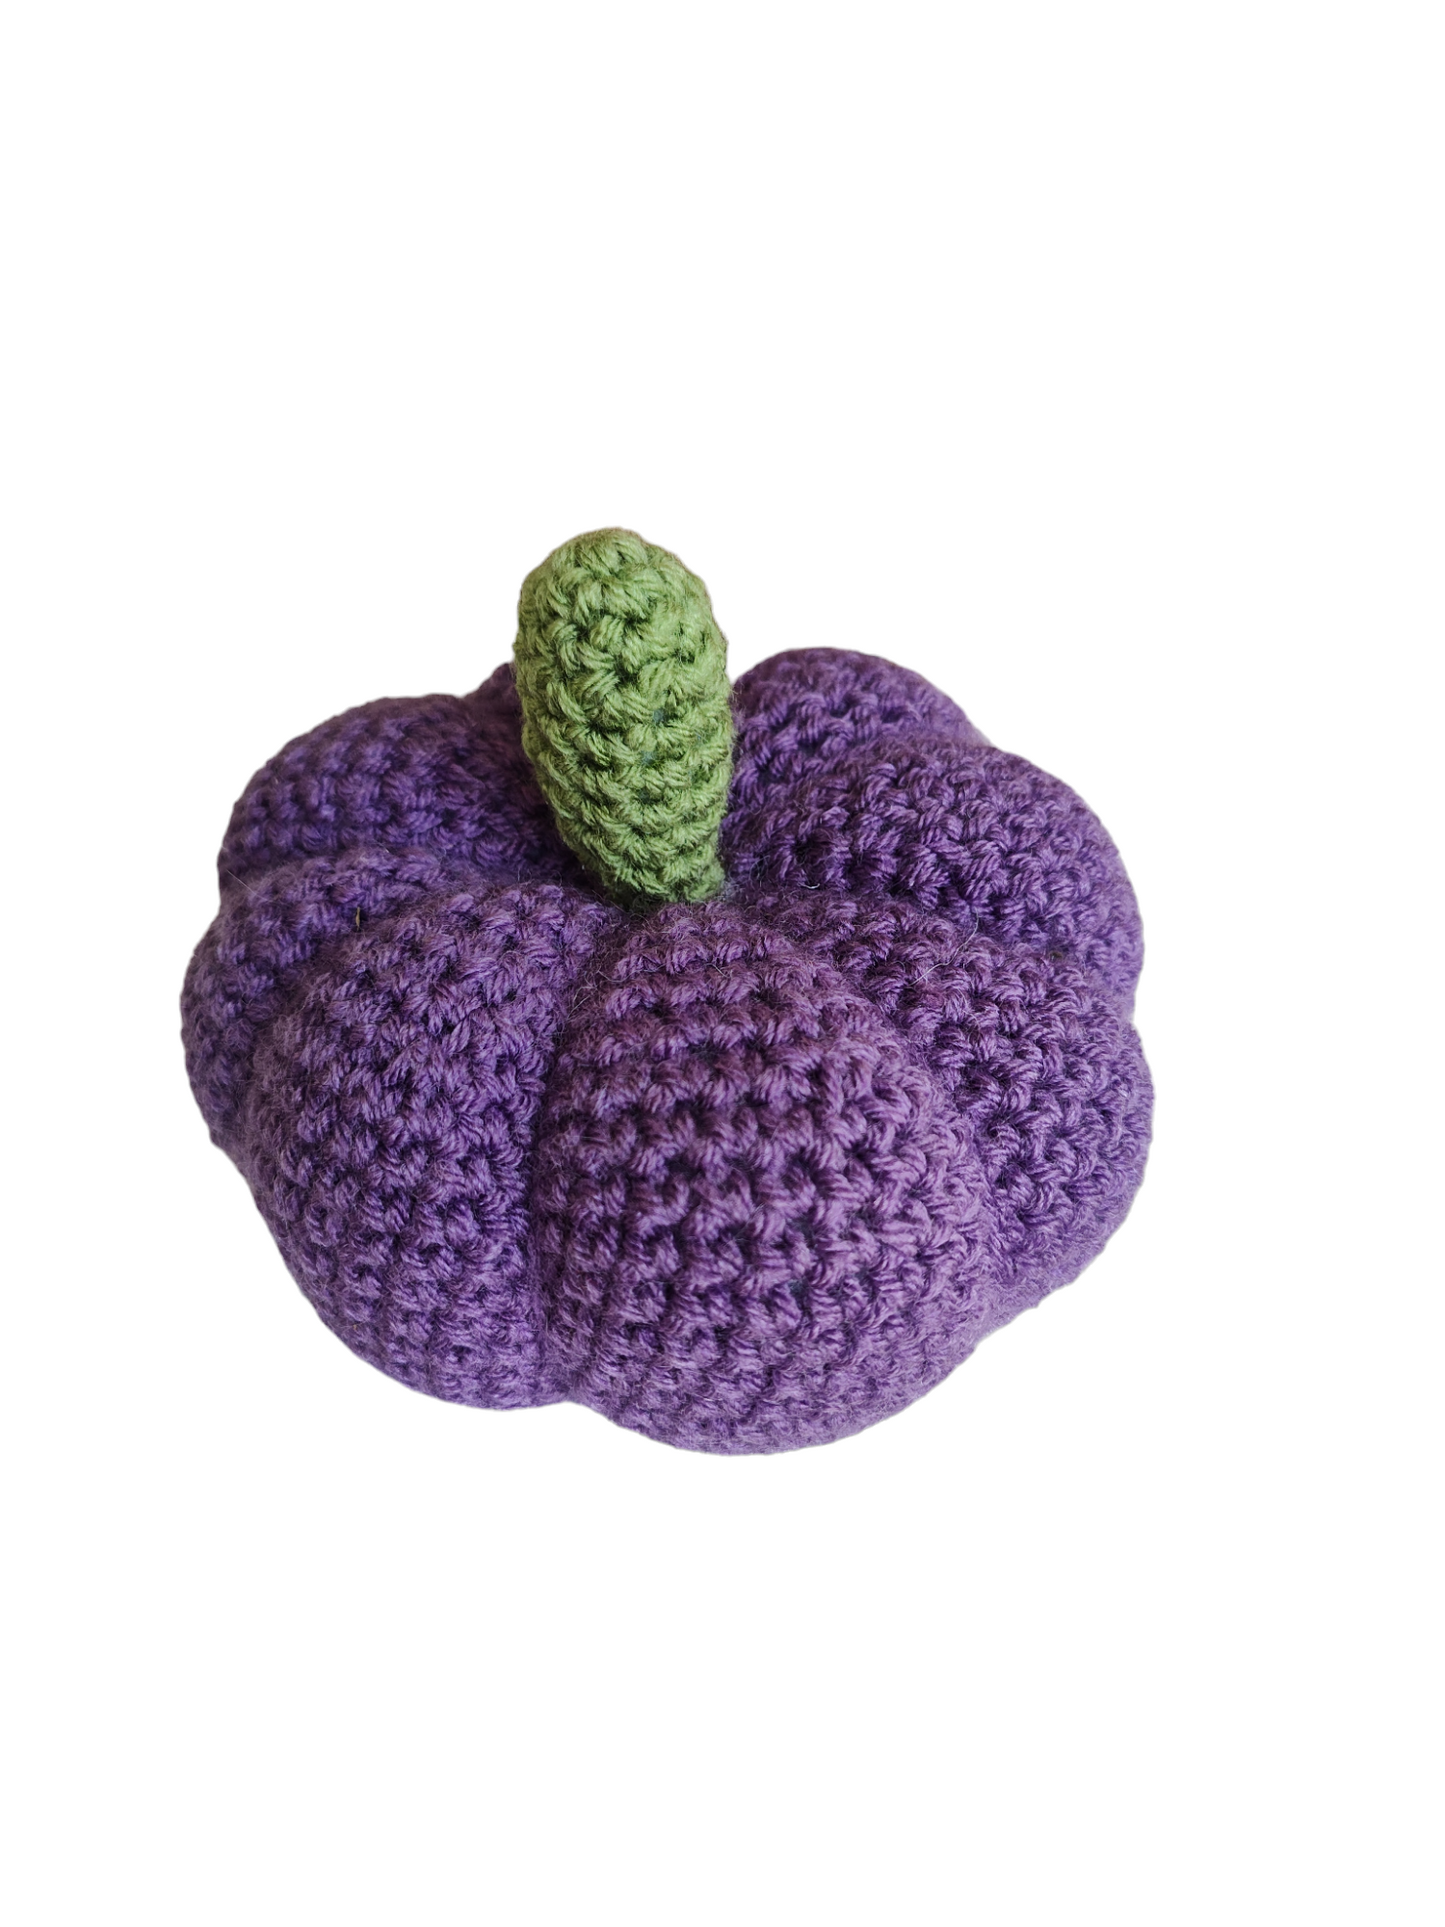 Crochet Pumpkin, Fall Decor